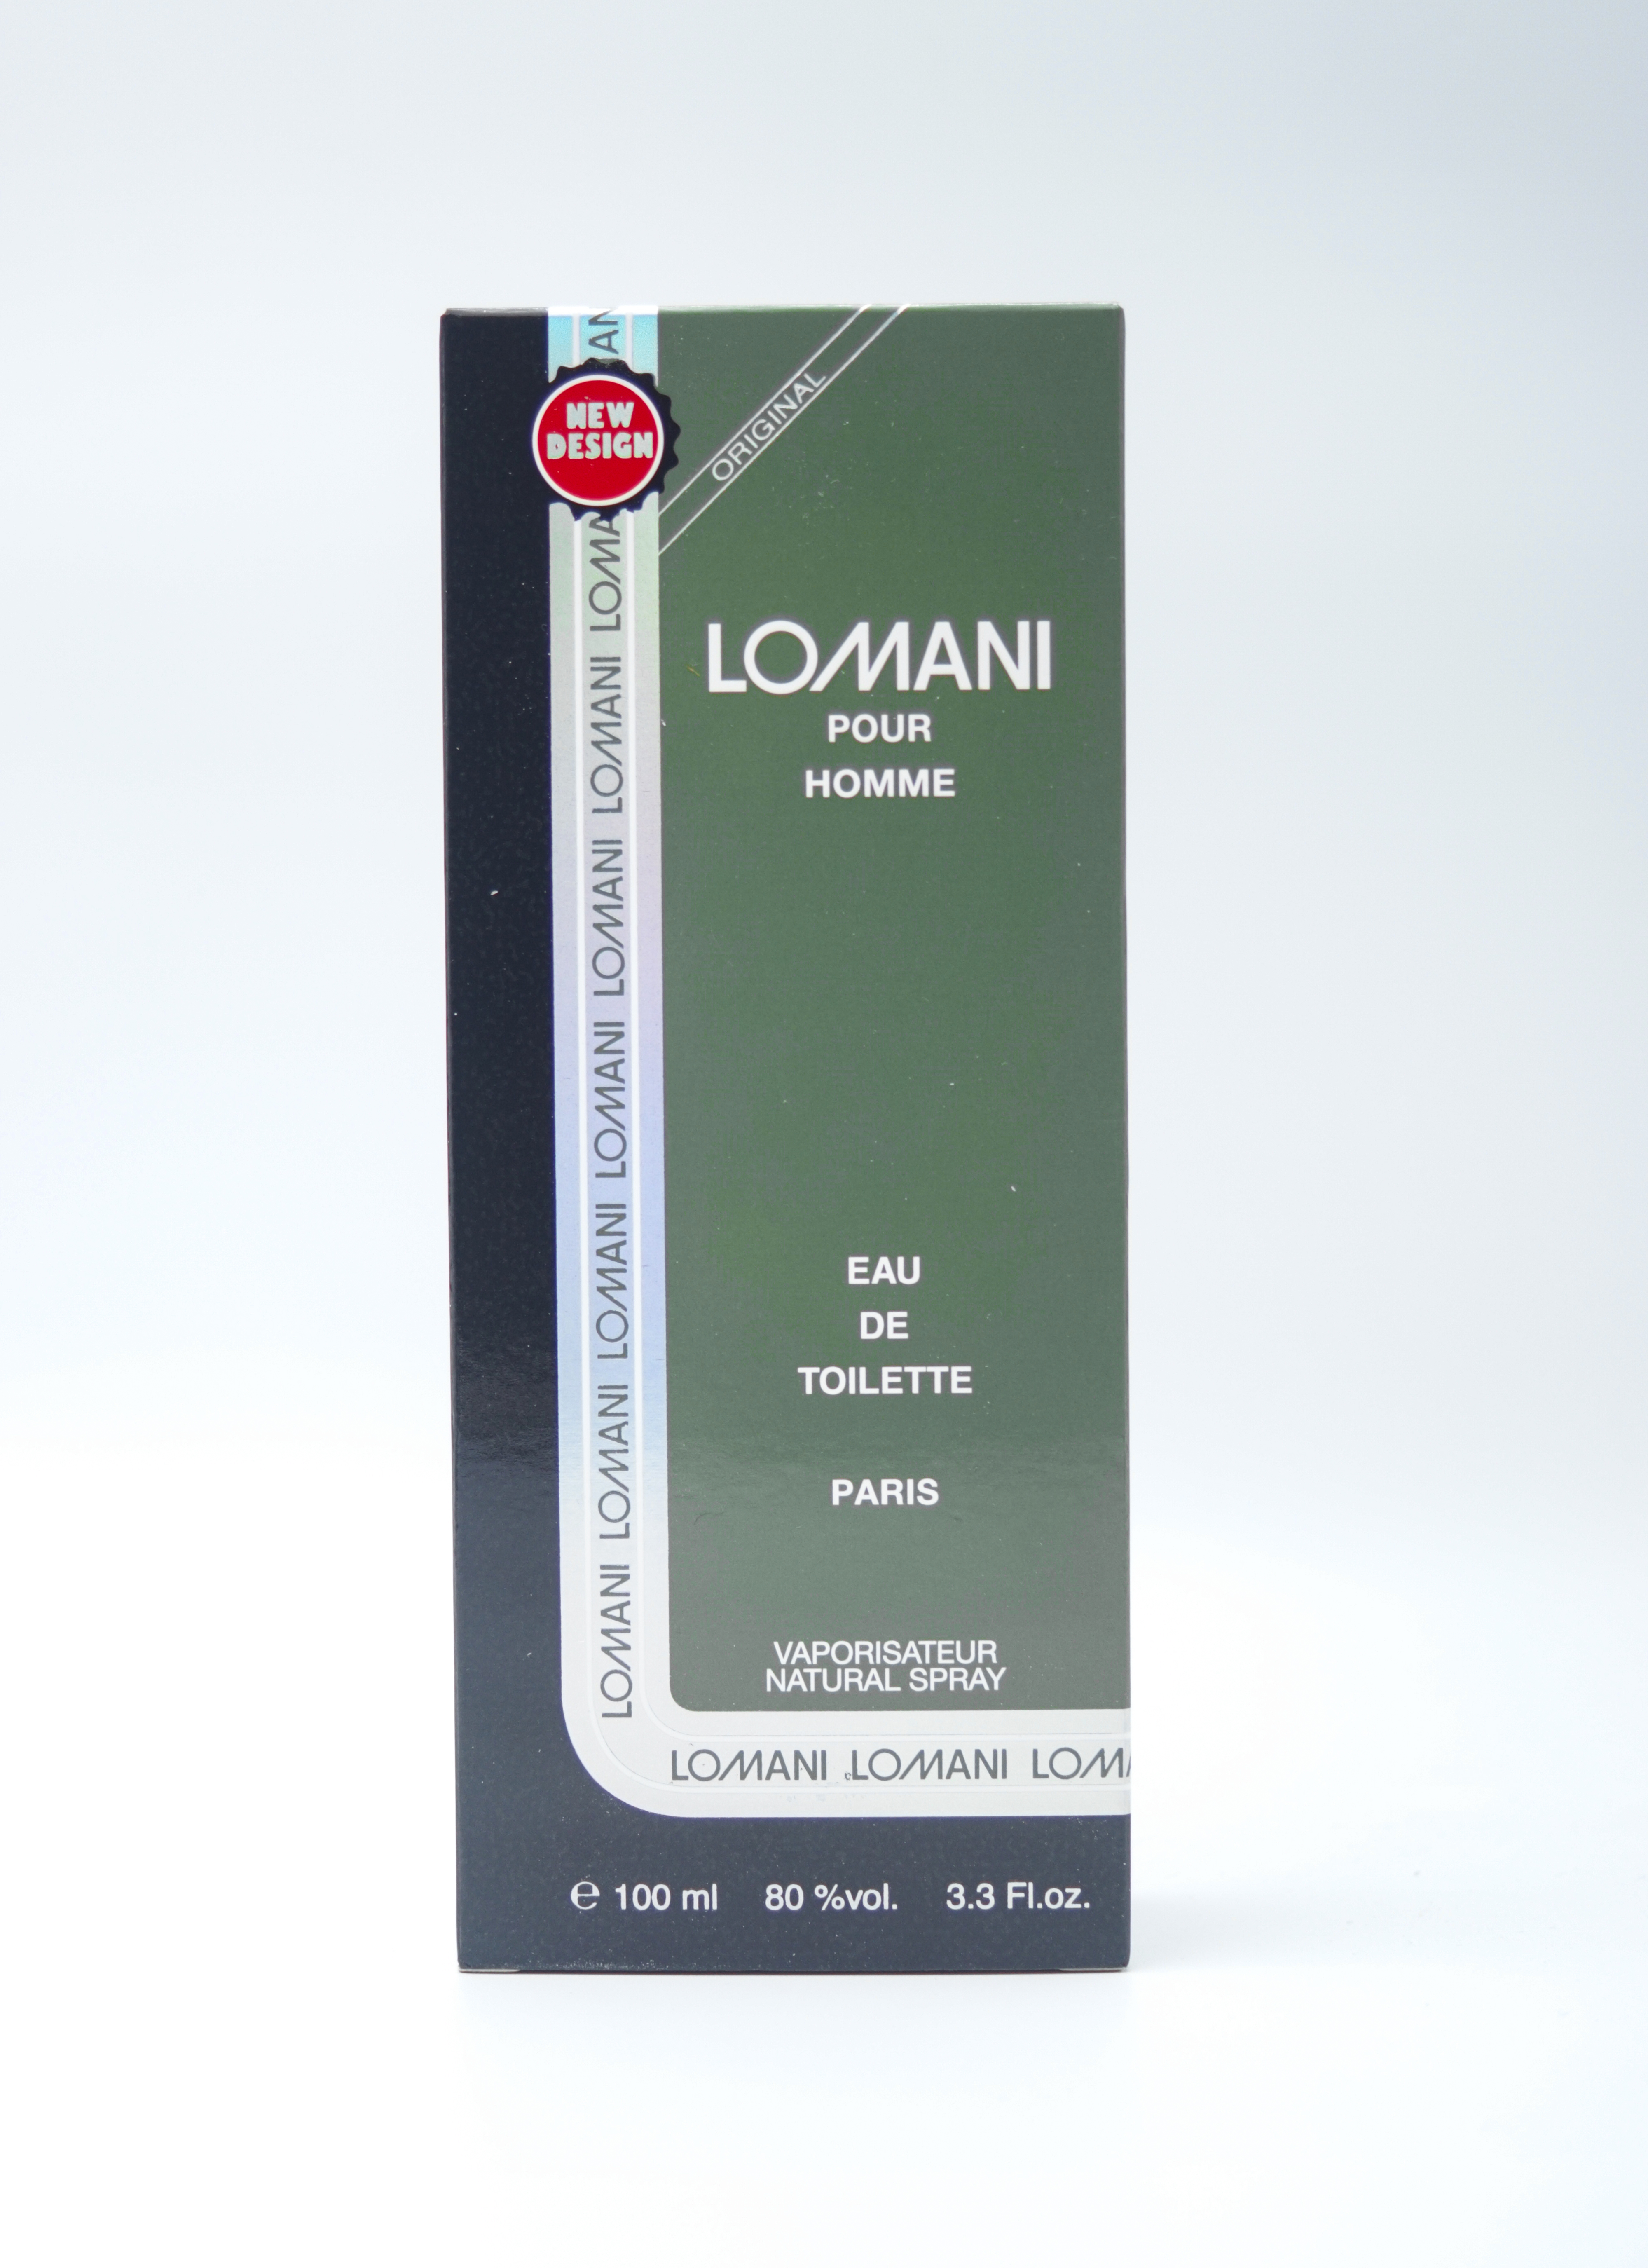 Lomani Pour Homme 100 ml Eau De Toilette Vaporisateur Natural Spray Perfume For Men SKU 96807